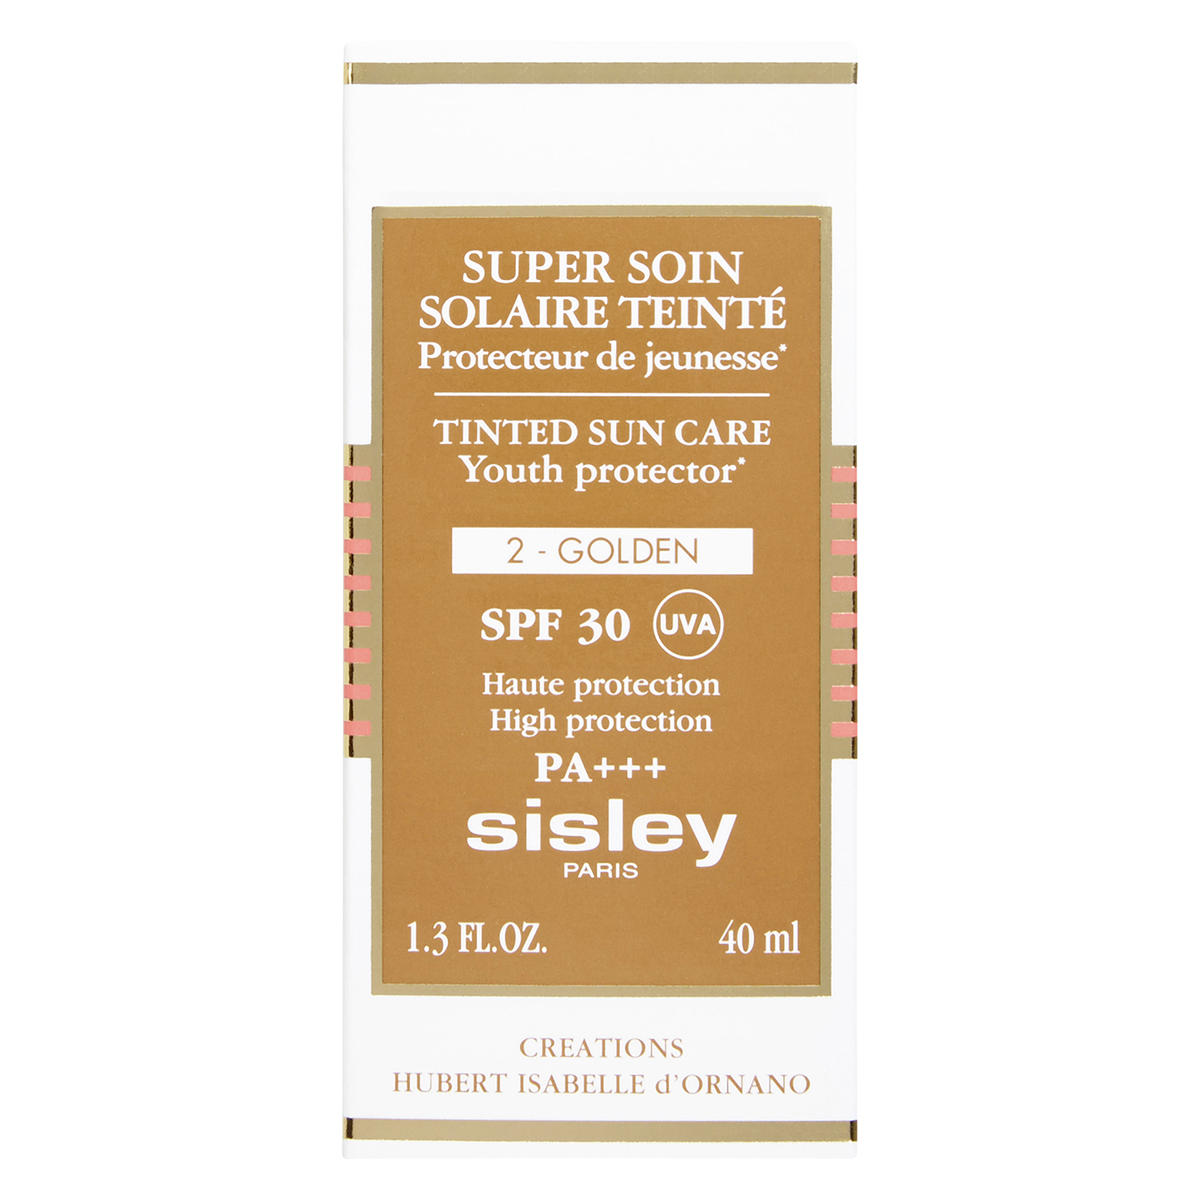 Sisley Paris Super Soin Solaire Teinté SPF 30 2 Golden, 40 ml - 3